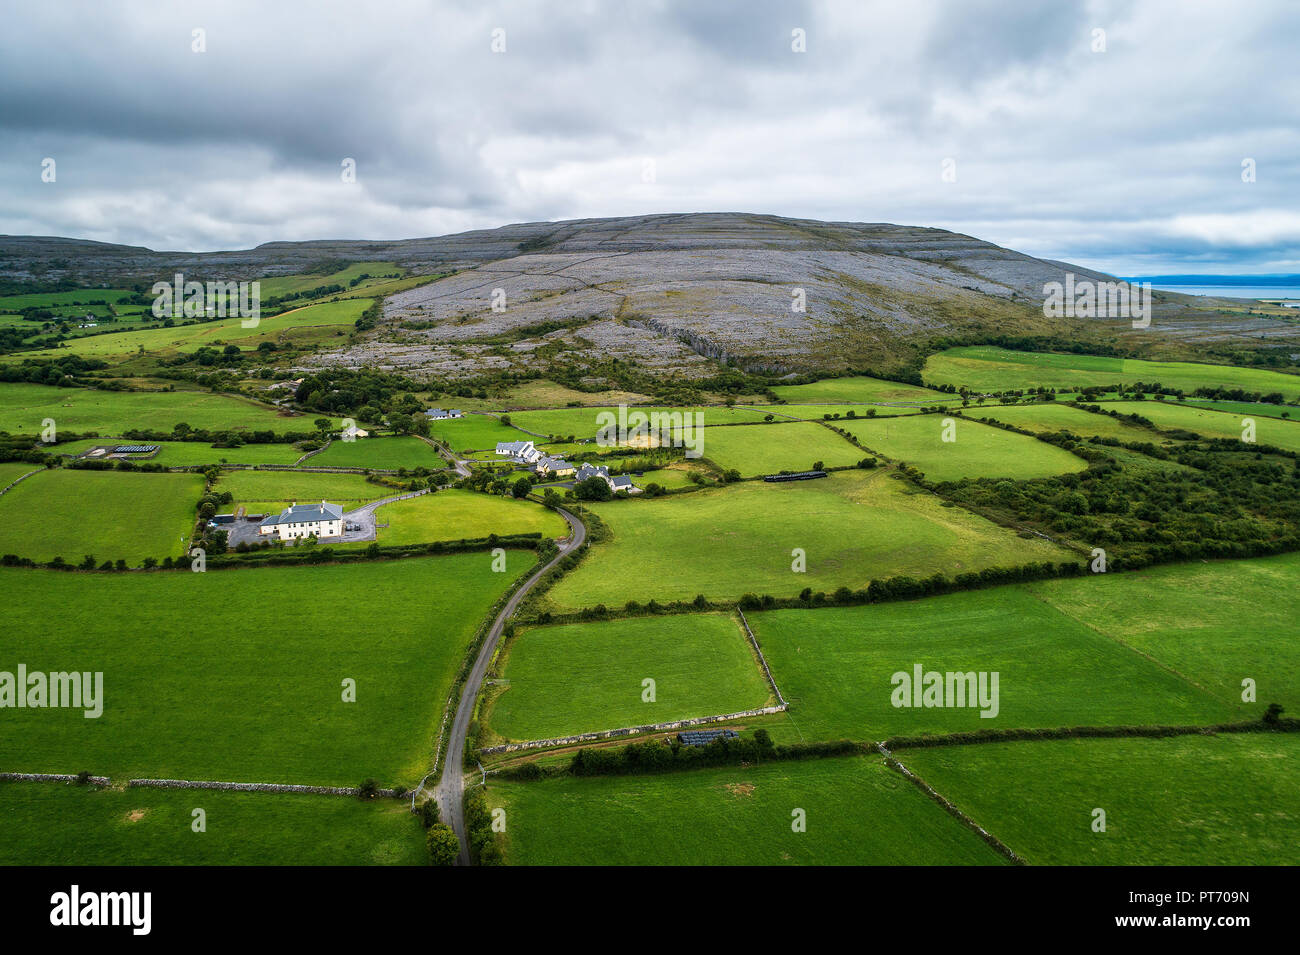 Vue aérienne de la région du Burren en Irlande Banque D'Images